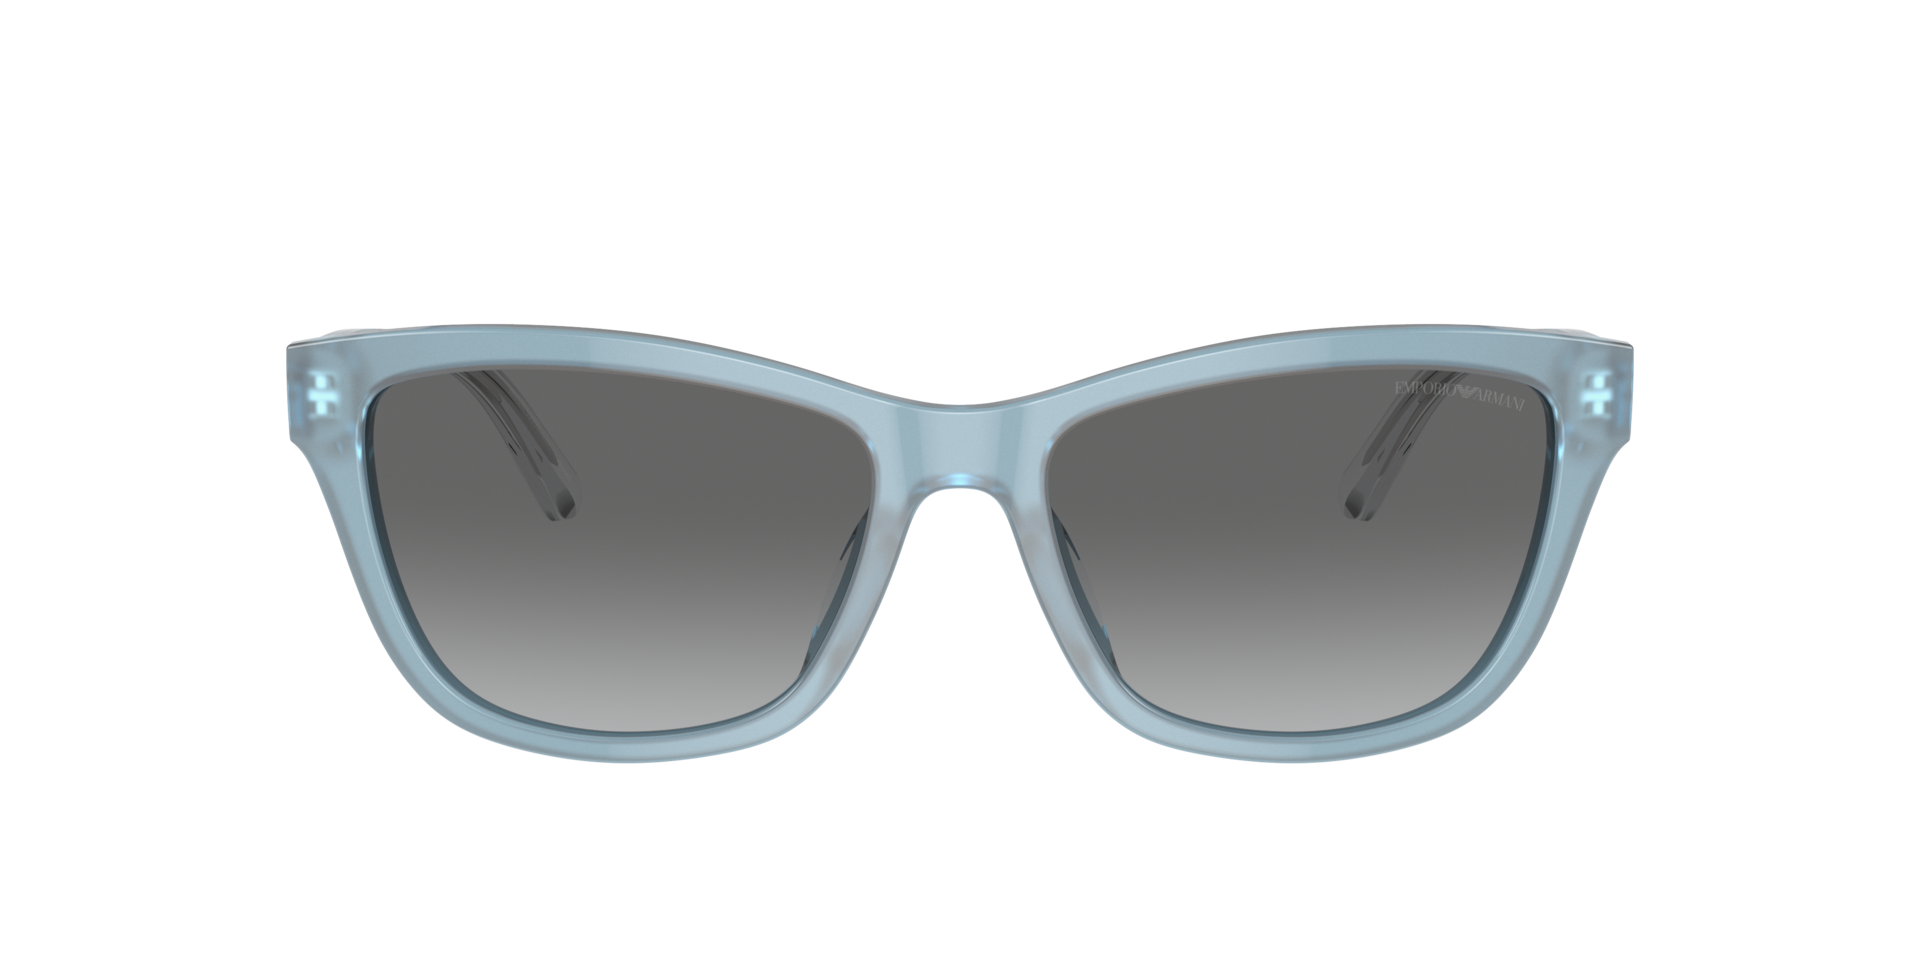 Das Bild zeigt die Sonnenbrille EA4227U 609611 von der Marke Emporio Armani in azurblau.